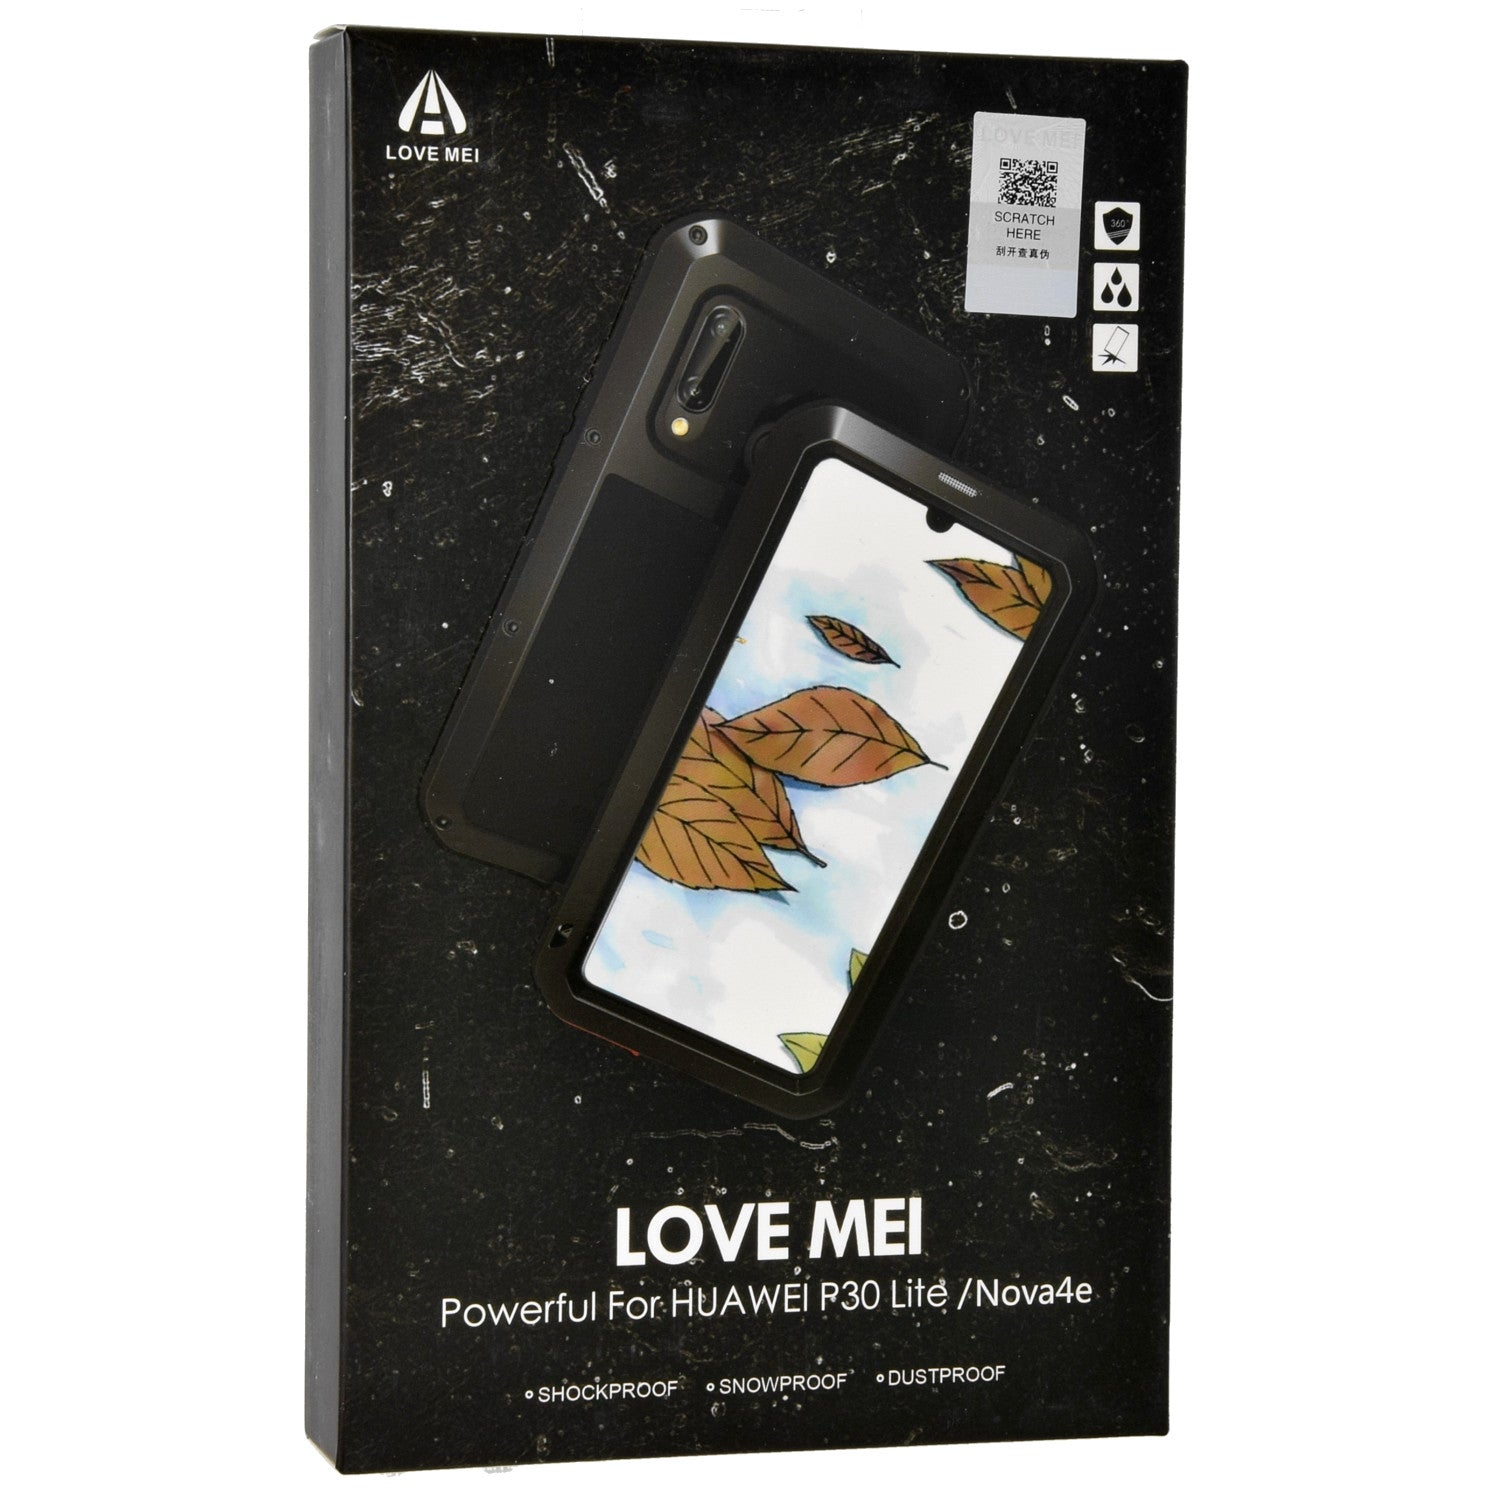 Gepanzerte Schutzhülle mit Glas für Huawei P30 Lite, Love Mei Powerful, Schwarz